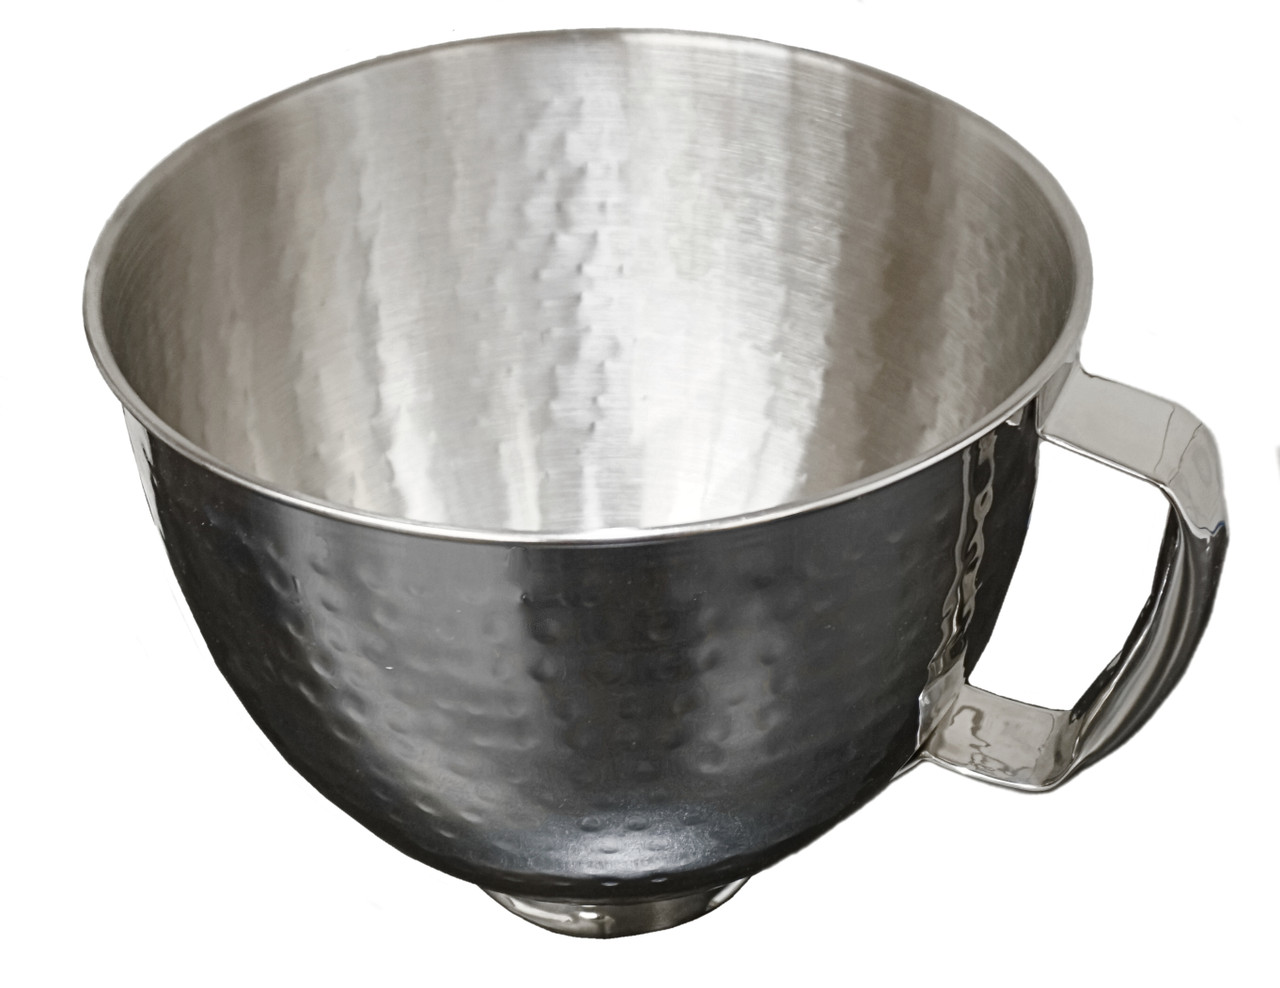 Mixer 5qt S.S. Bowl w/Handle for KitchenAid, K5THSBP, W10245282